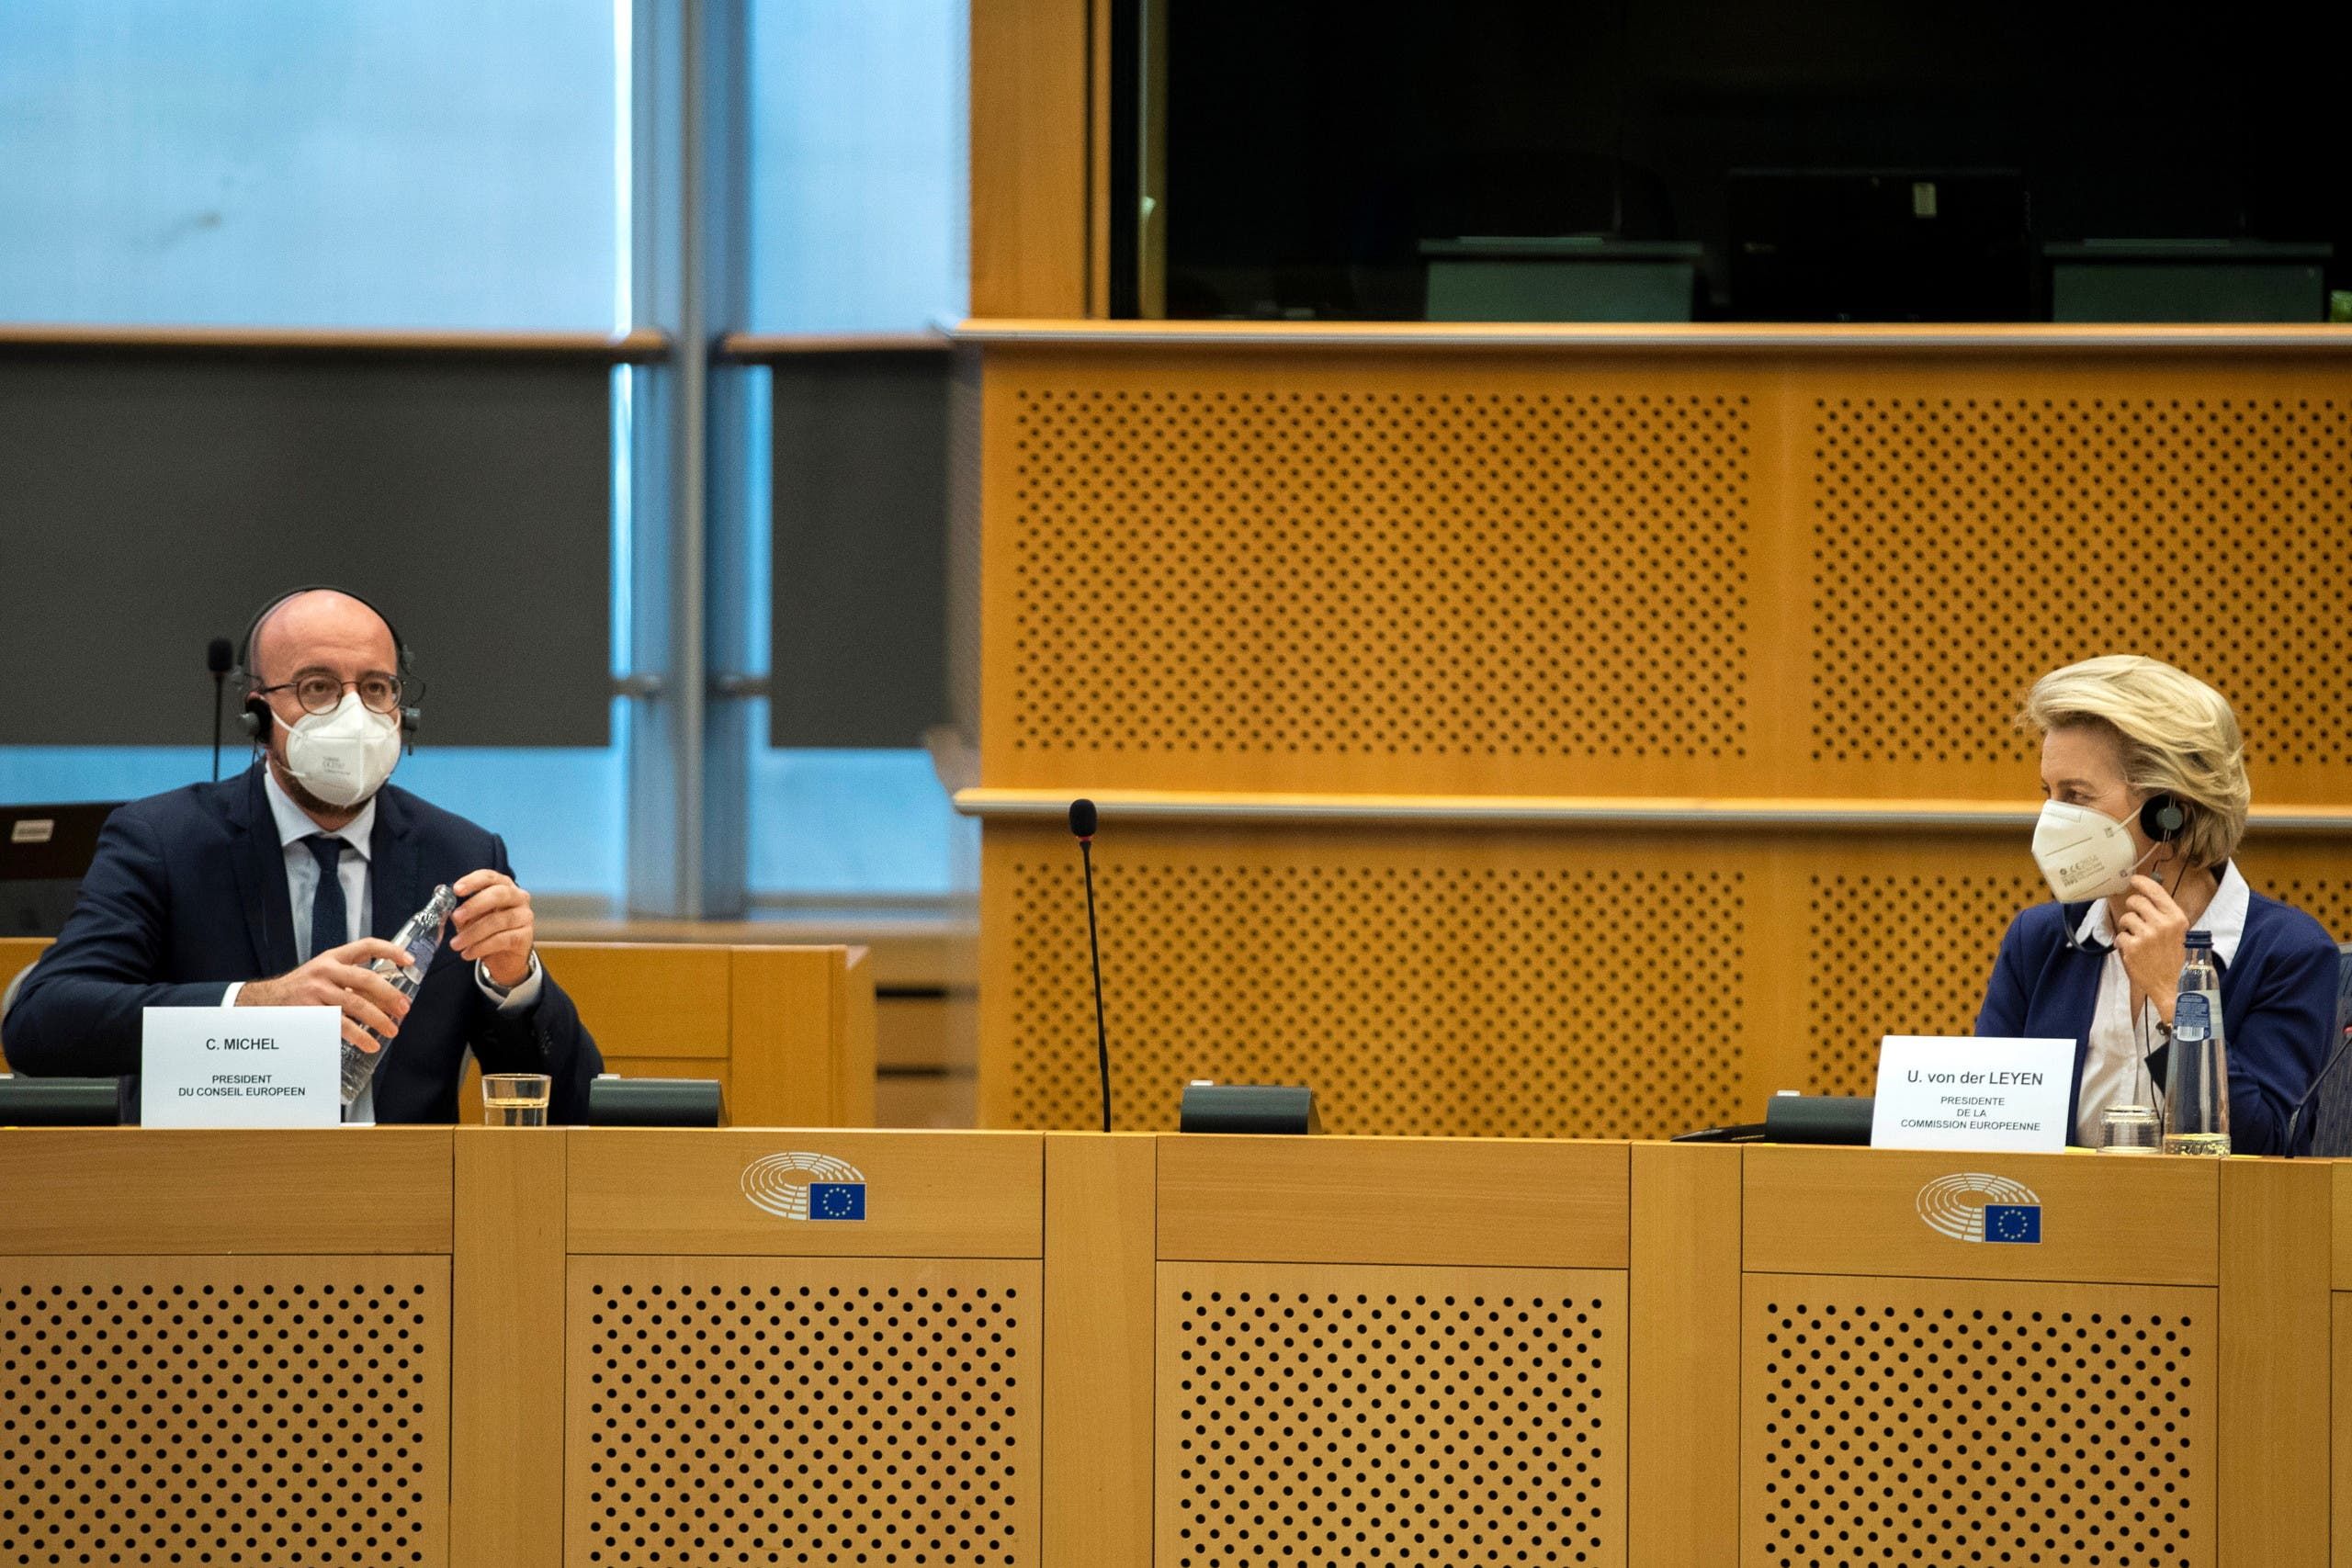 فون دير ليين وميشال في جلسة الاستماع لهما في البرلمان الأوروبي